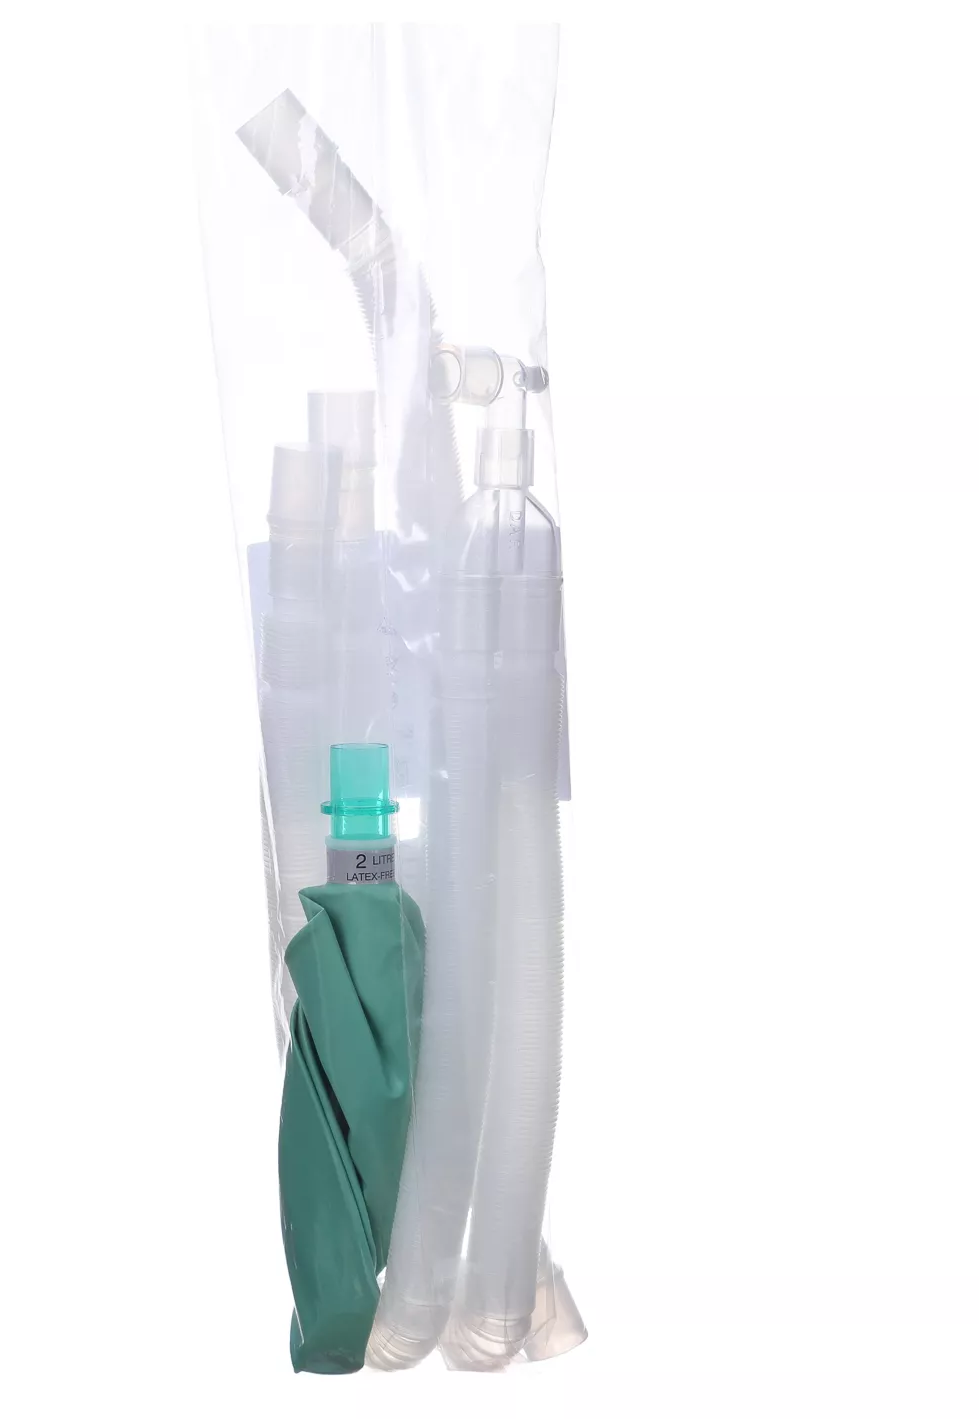 Контур дыхательный, из полиэтилена, для анестезии, взрослый  22мм, длина 150см, 22F-22F